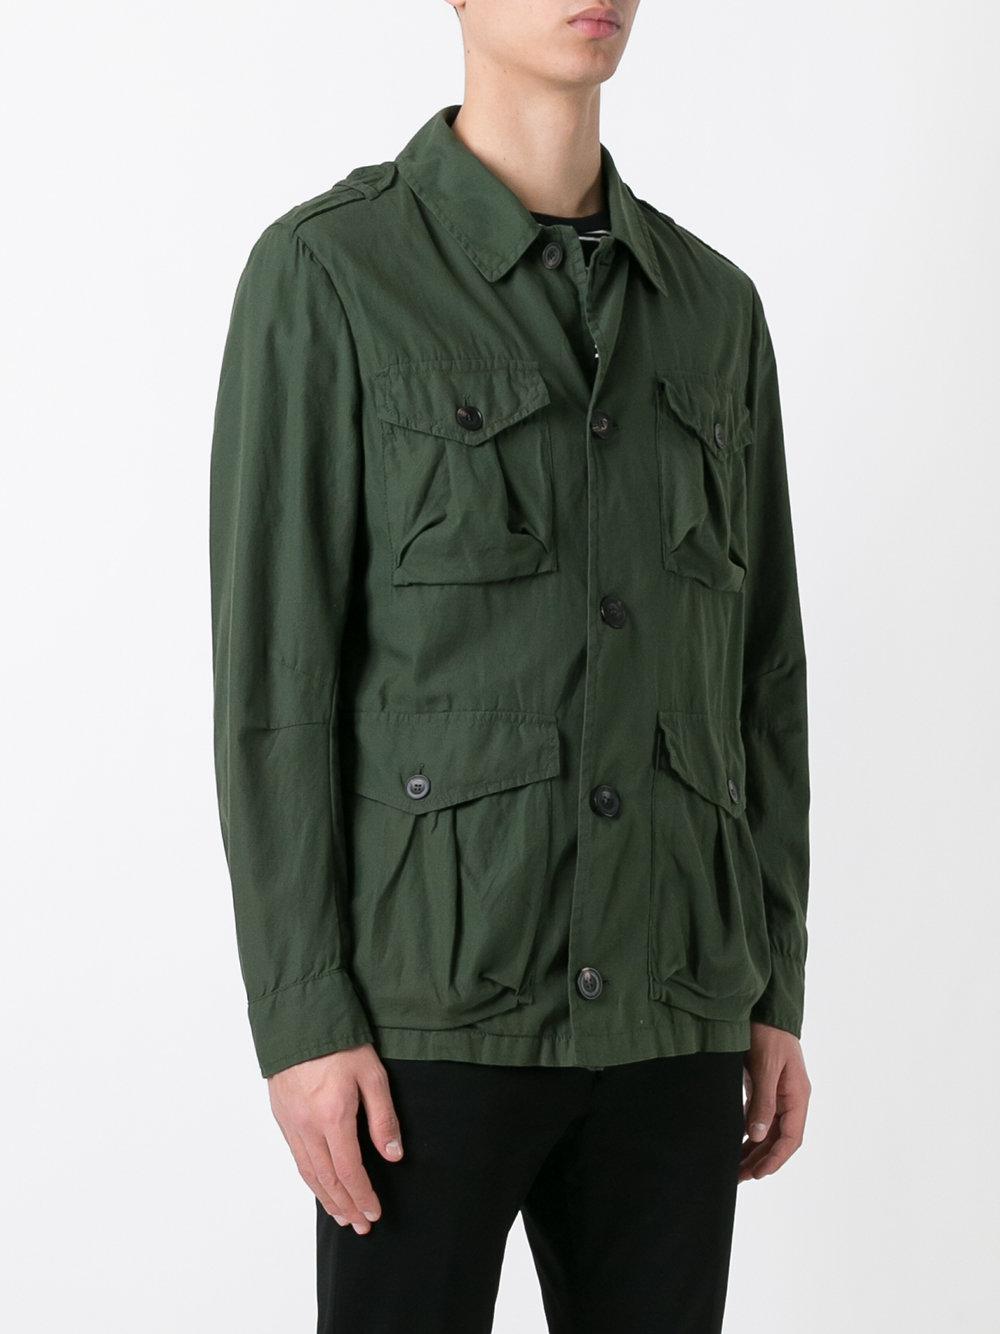 Lyst - Hevò Cargo Jacket in Green for Men